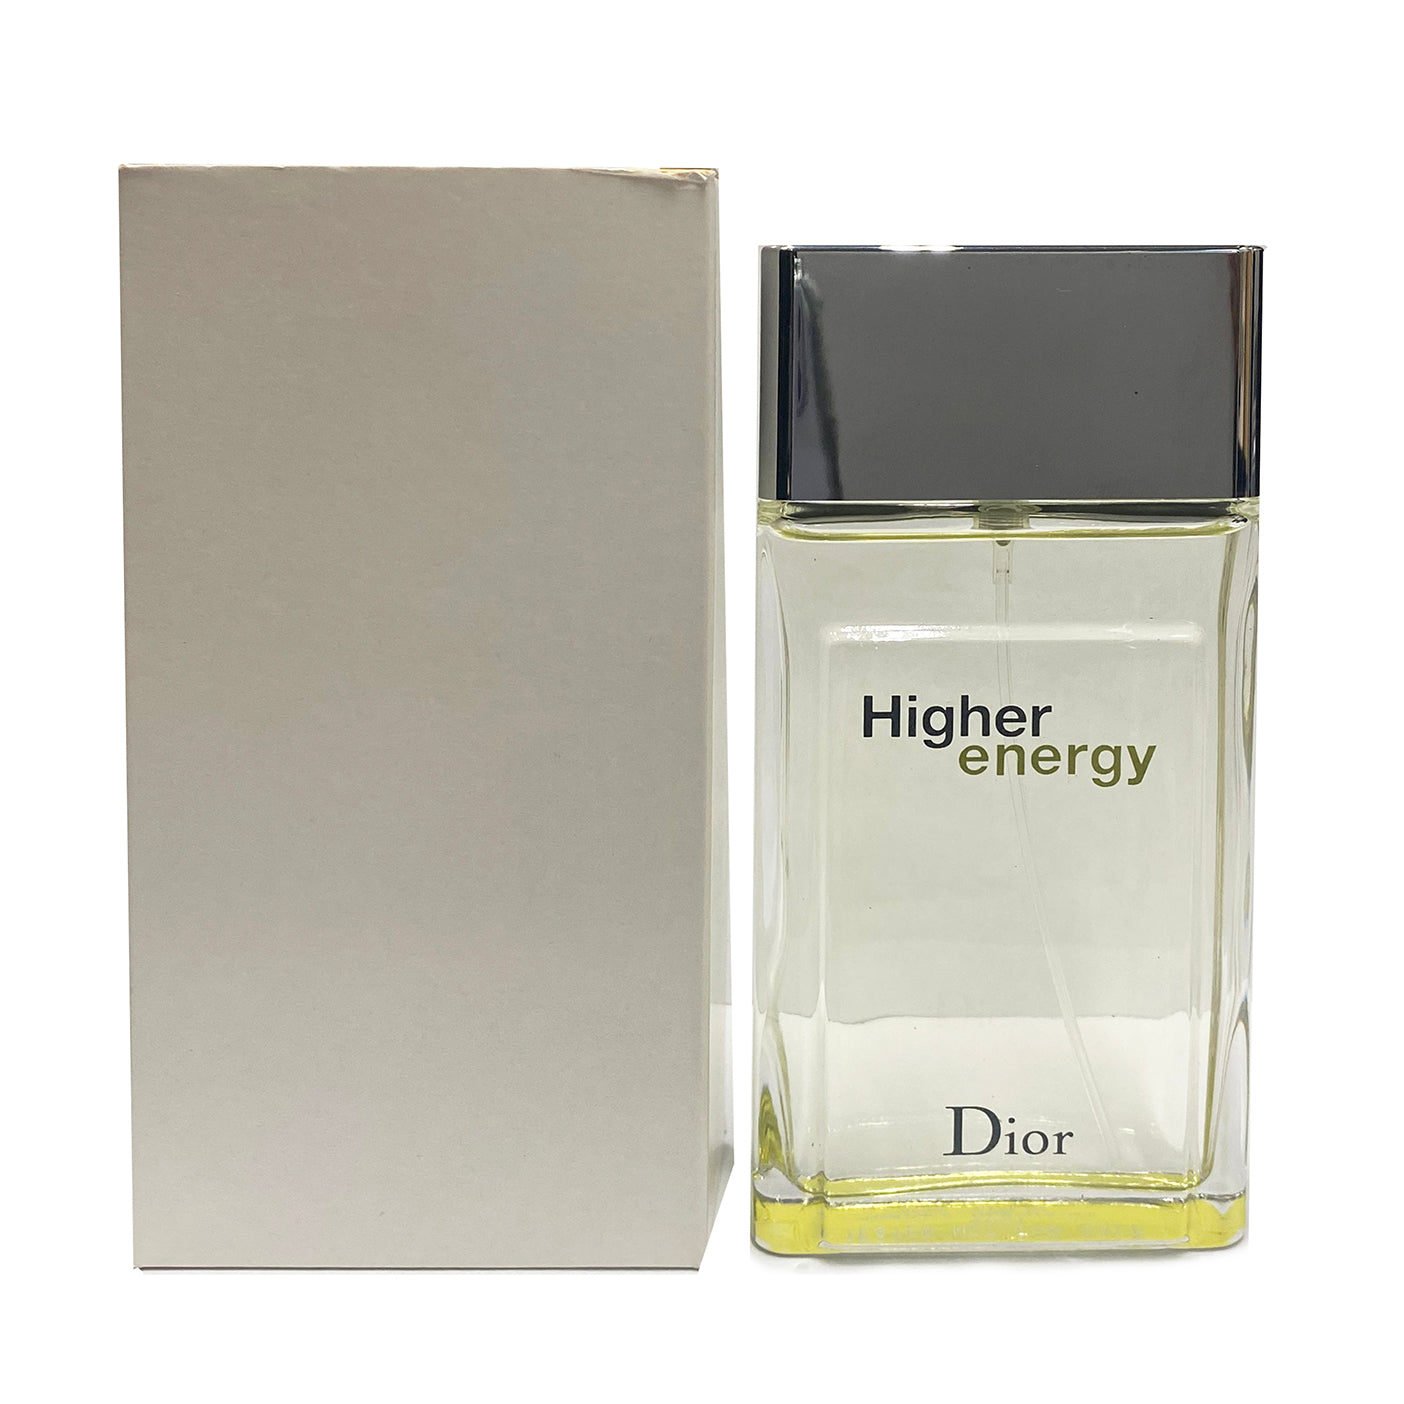 Lalique Men's Encre Noire Lextreme EDP 3.4 oz (Tester) Fragrances